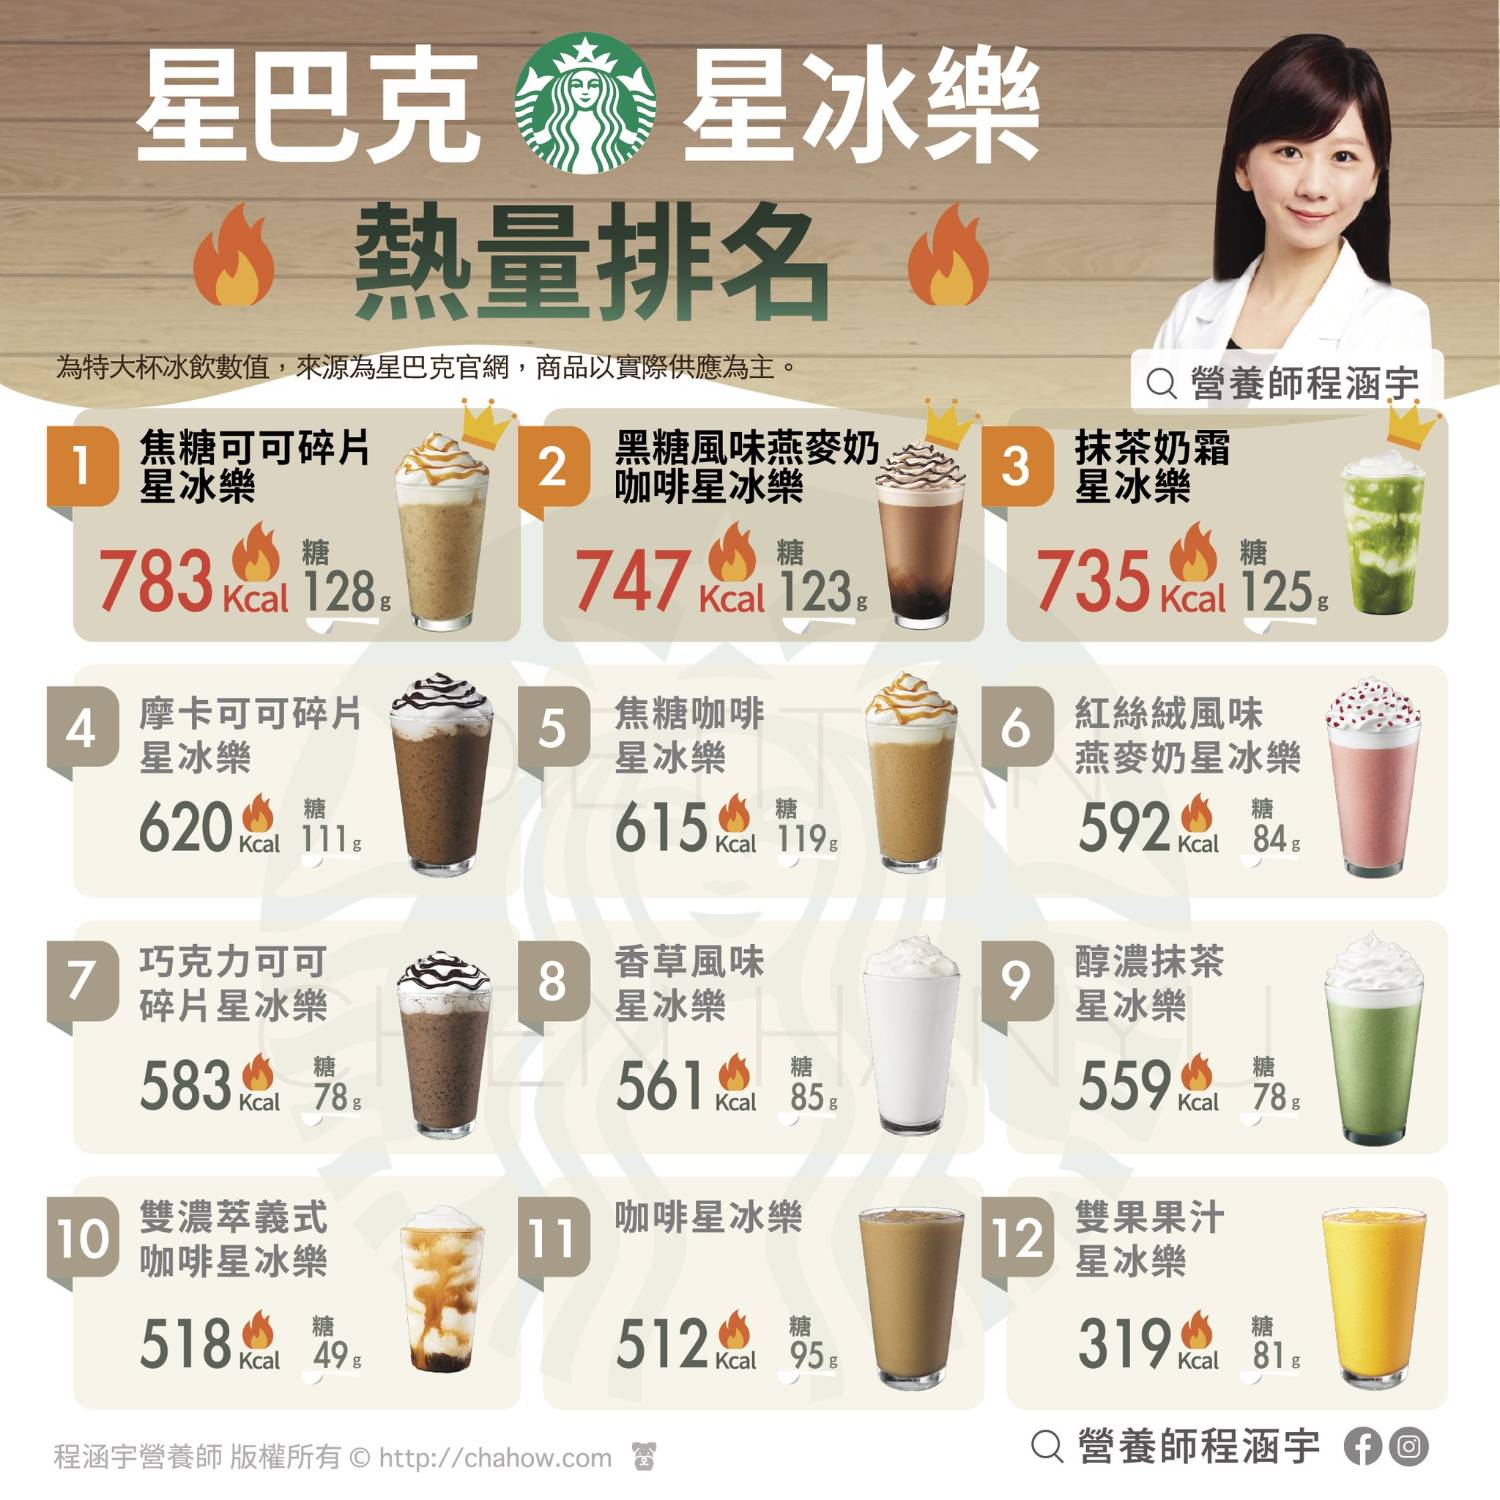 Re: [閒聊] 日本0卡飲料超多是要怎麼胖